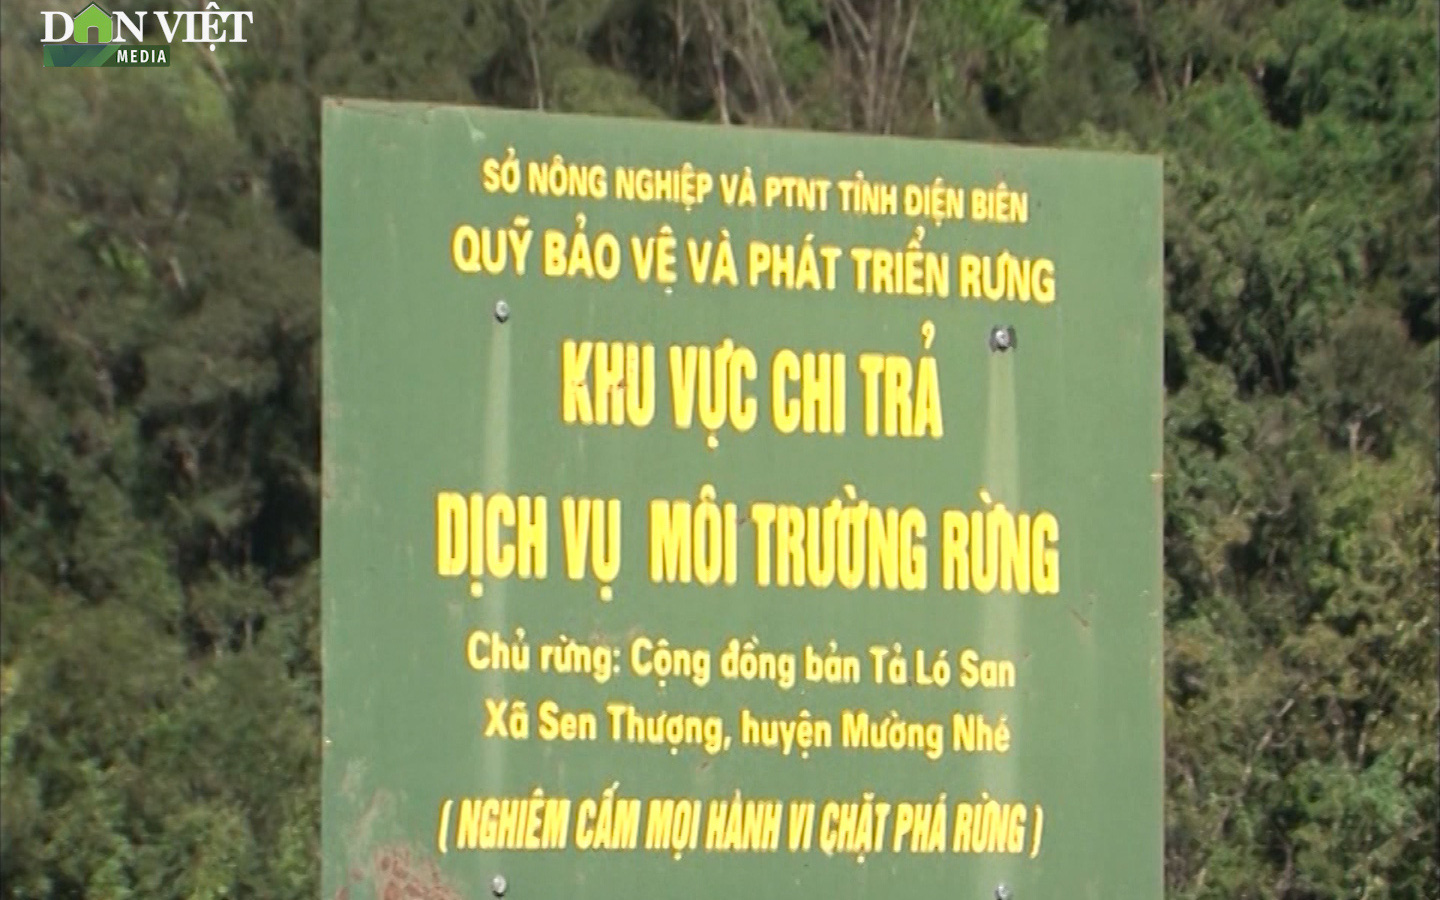 Hàng nghìn tỷ đồng dành cho những người giữ rừng ở Điện Biên